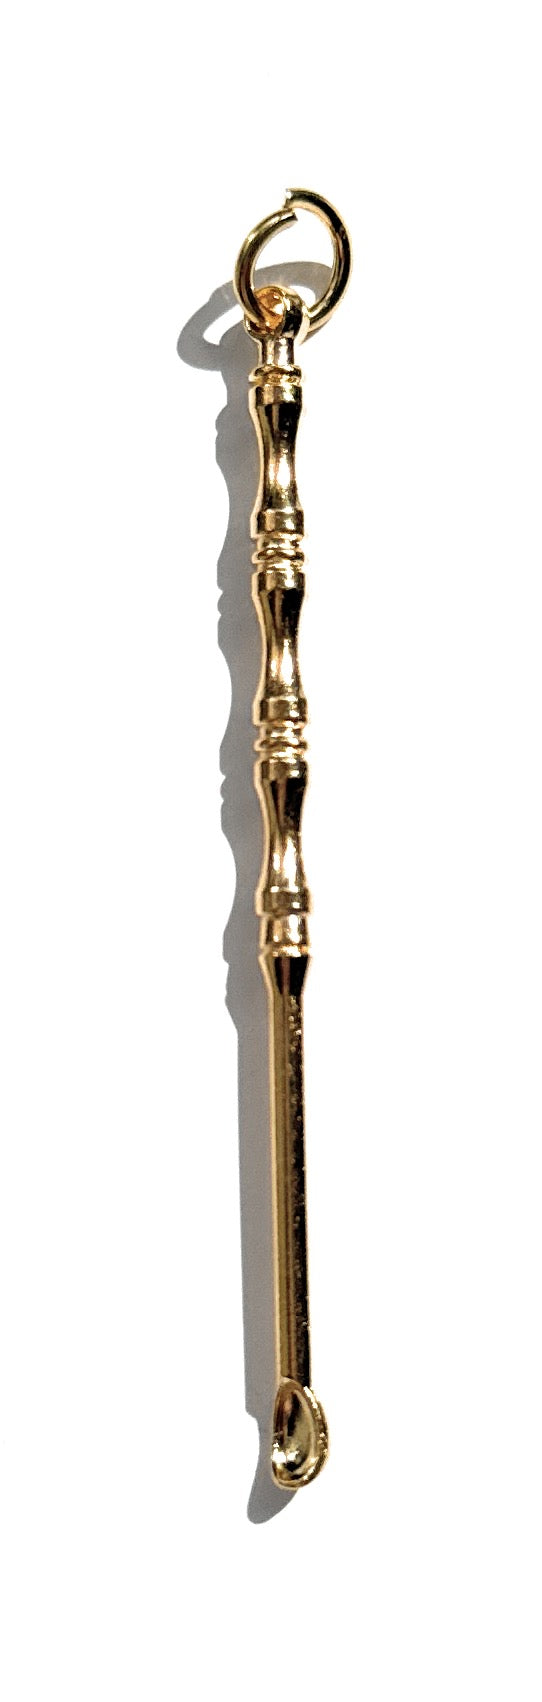 Mini cuillère aspect bambou en or ou argent avec anneau pour attacher à un trousseau de clés, etc. (env. 70 mm) individuellement ou en set